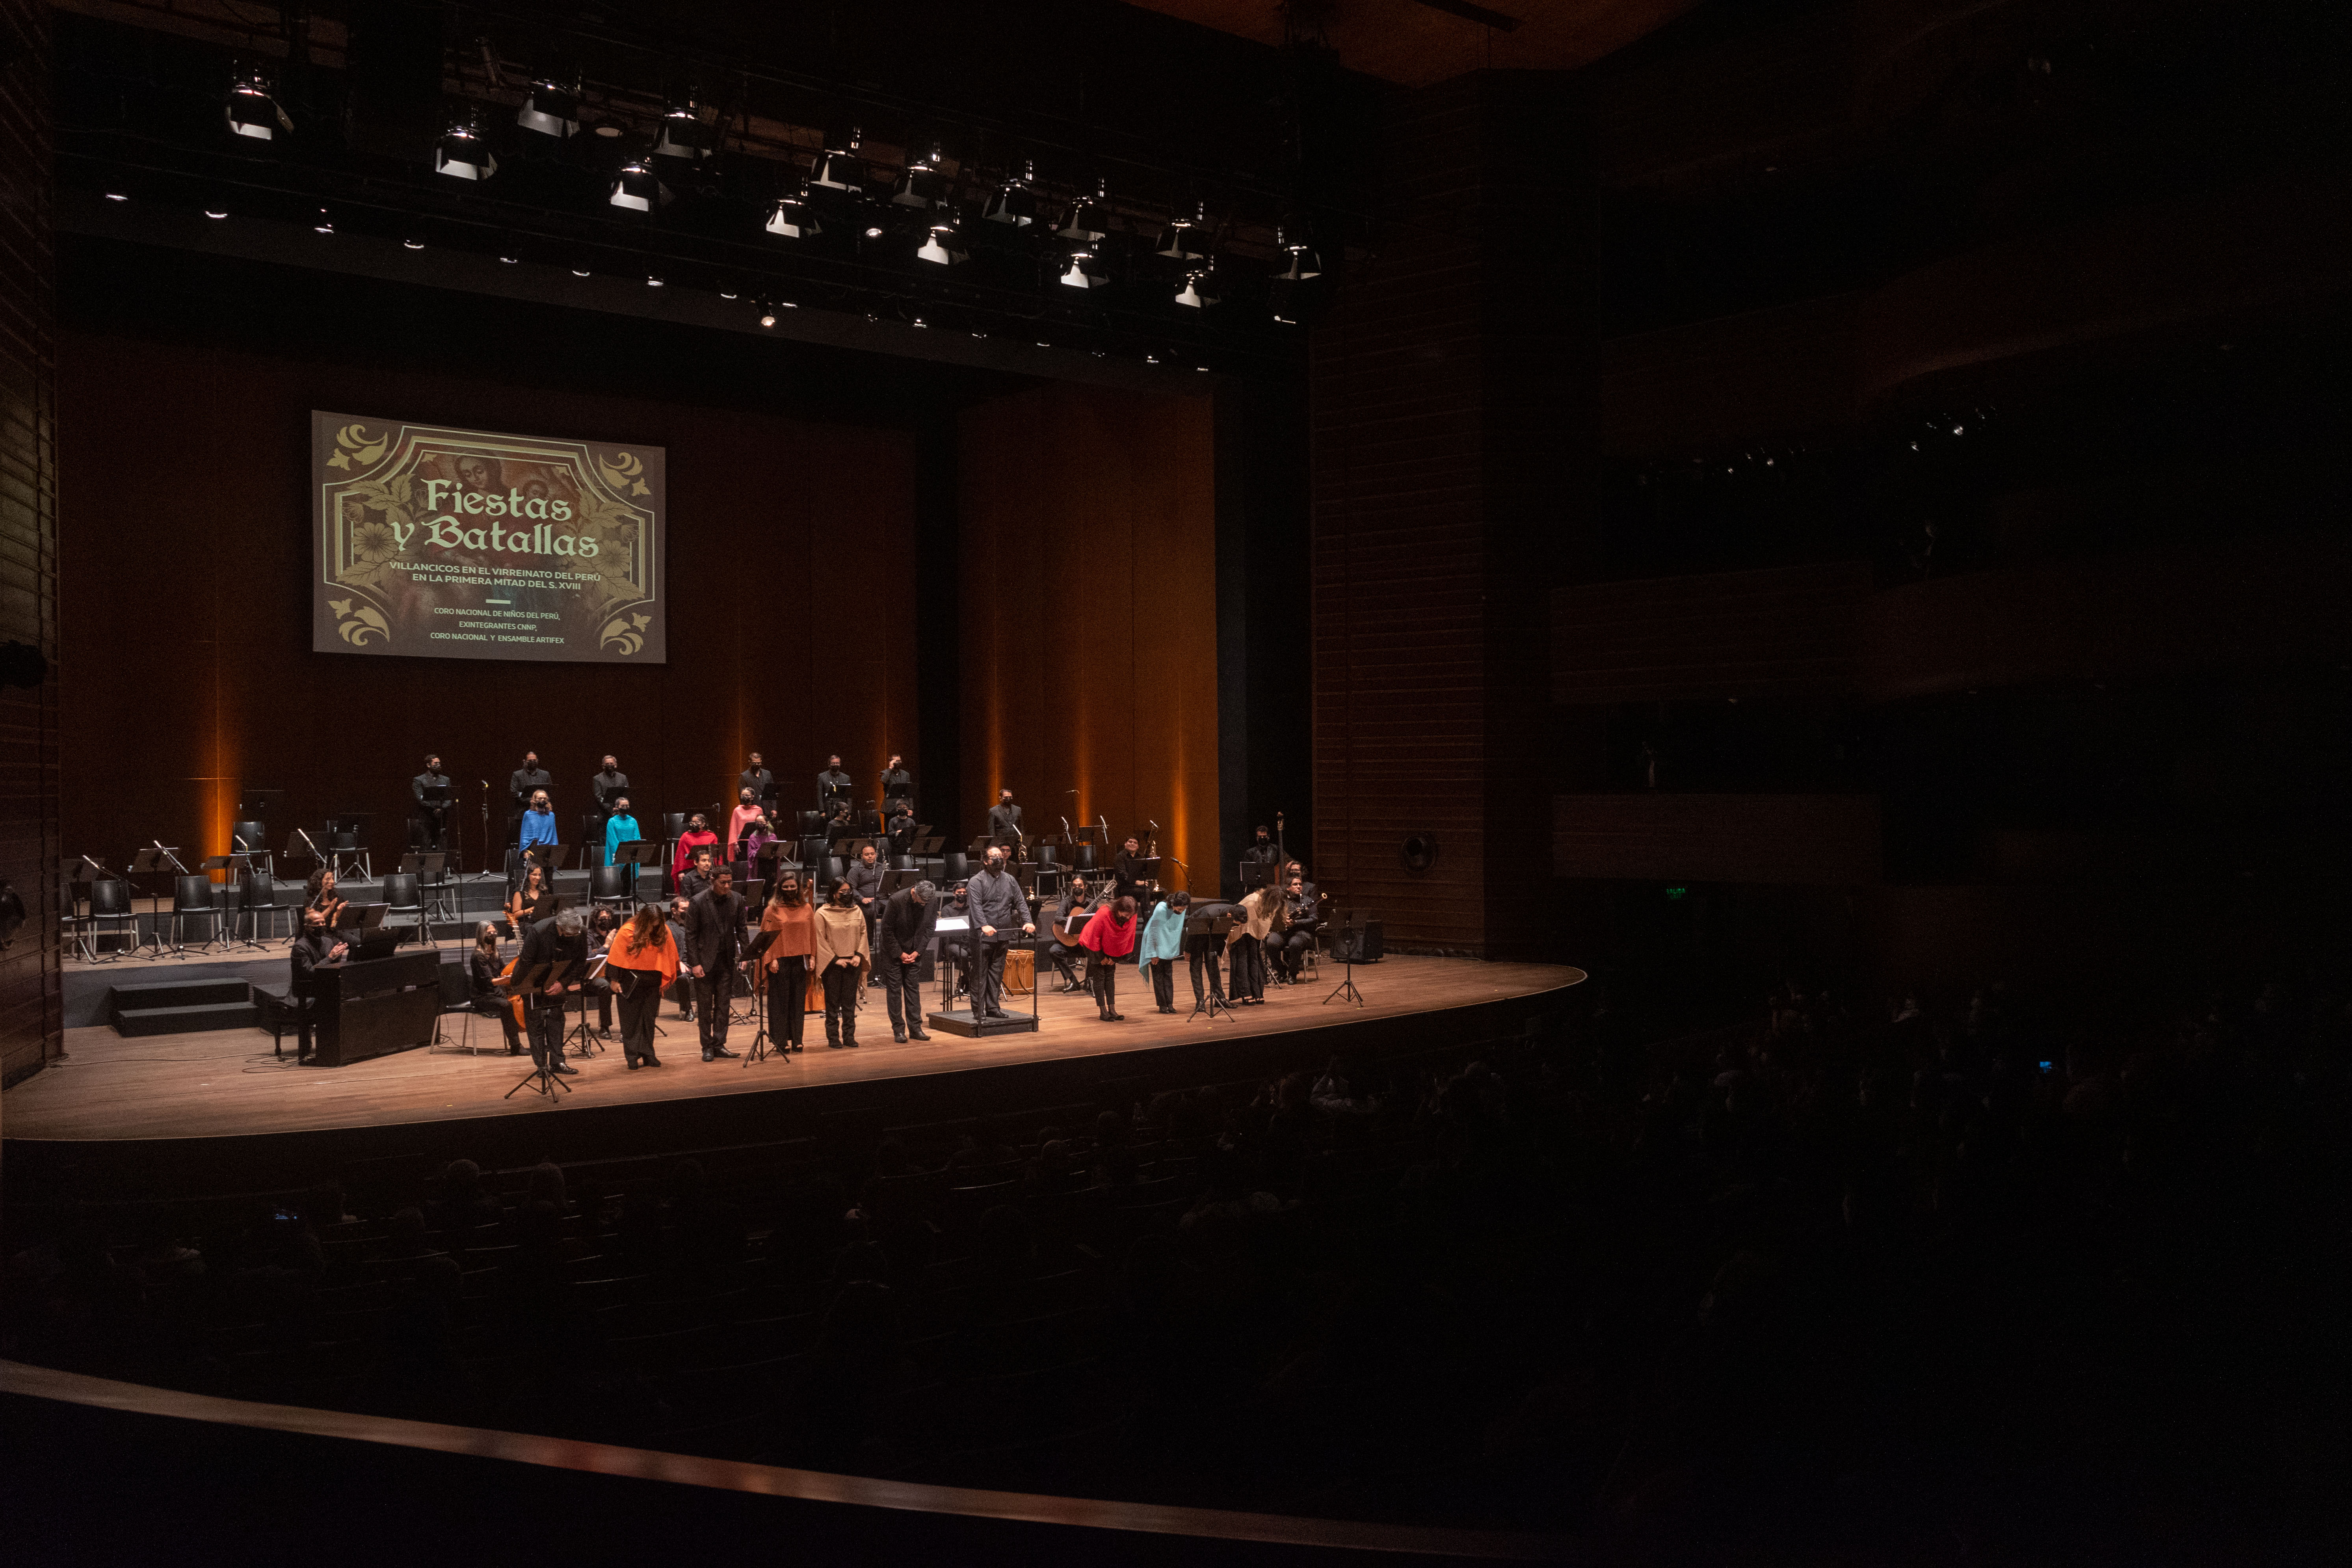 Coro Nacional de Niños del Perú regresó al GTN con recital “Fiestas y Batallas"